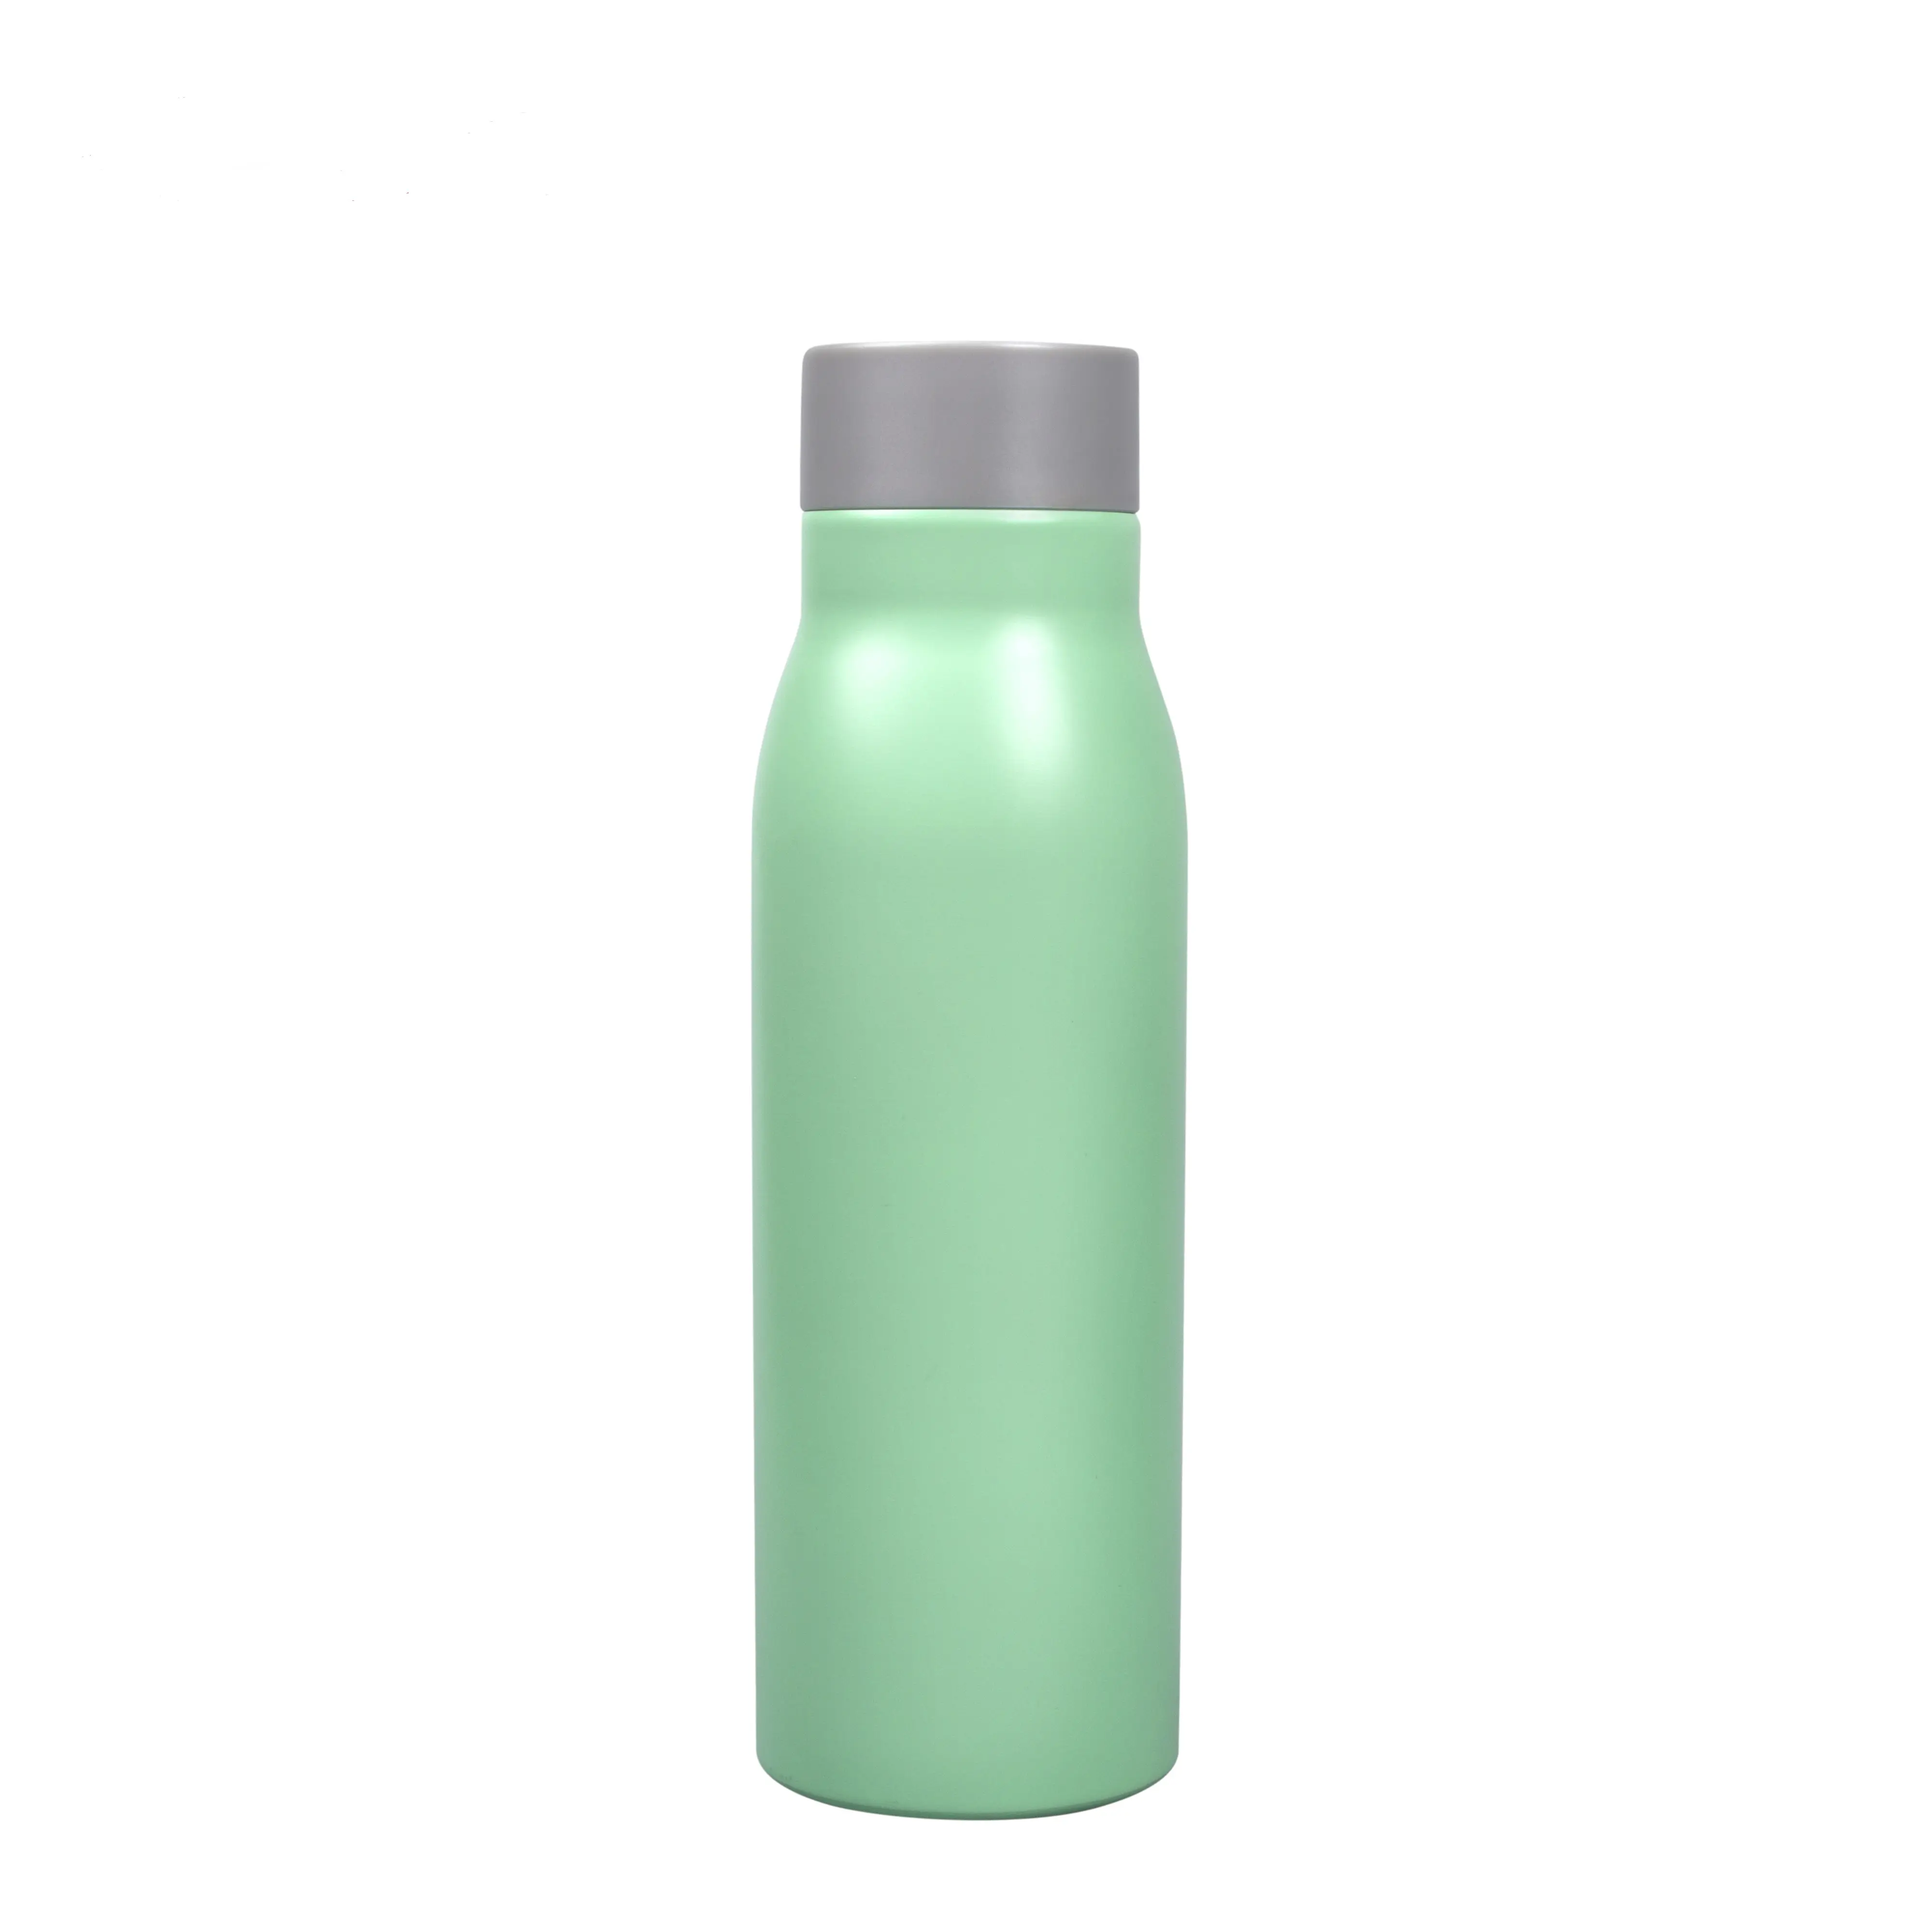 Shengming hohe qualität benutzerdefinierte wasserflasche 450 ml doppelwandige edelstahl-thermosflasche hat lebensmittel-klasse-test bestanden